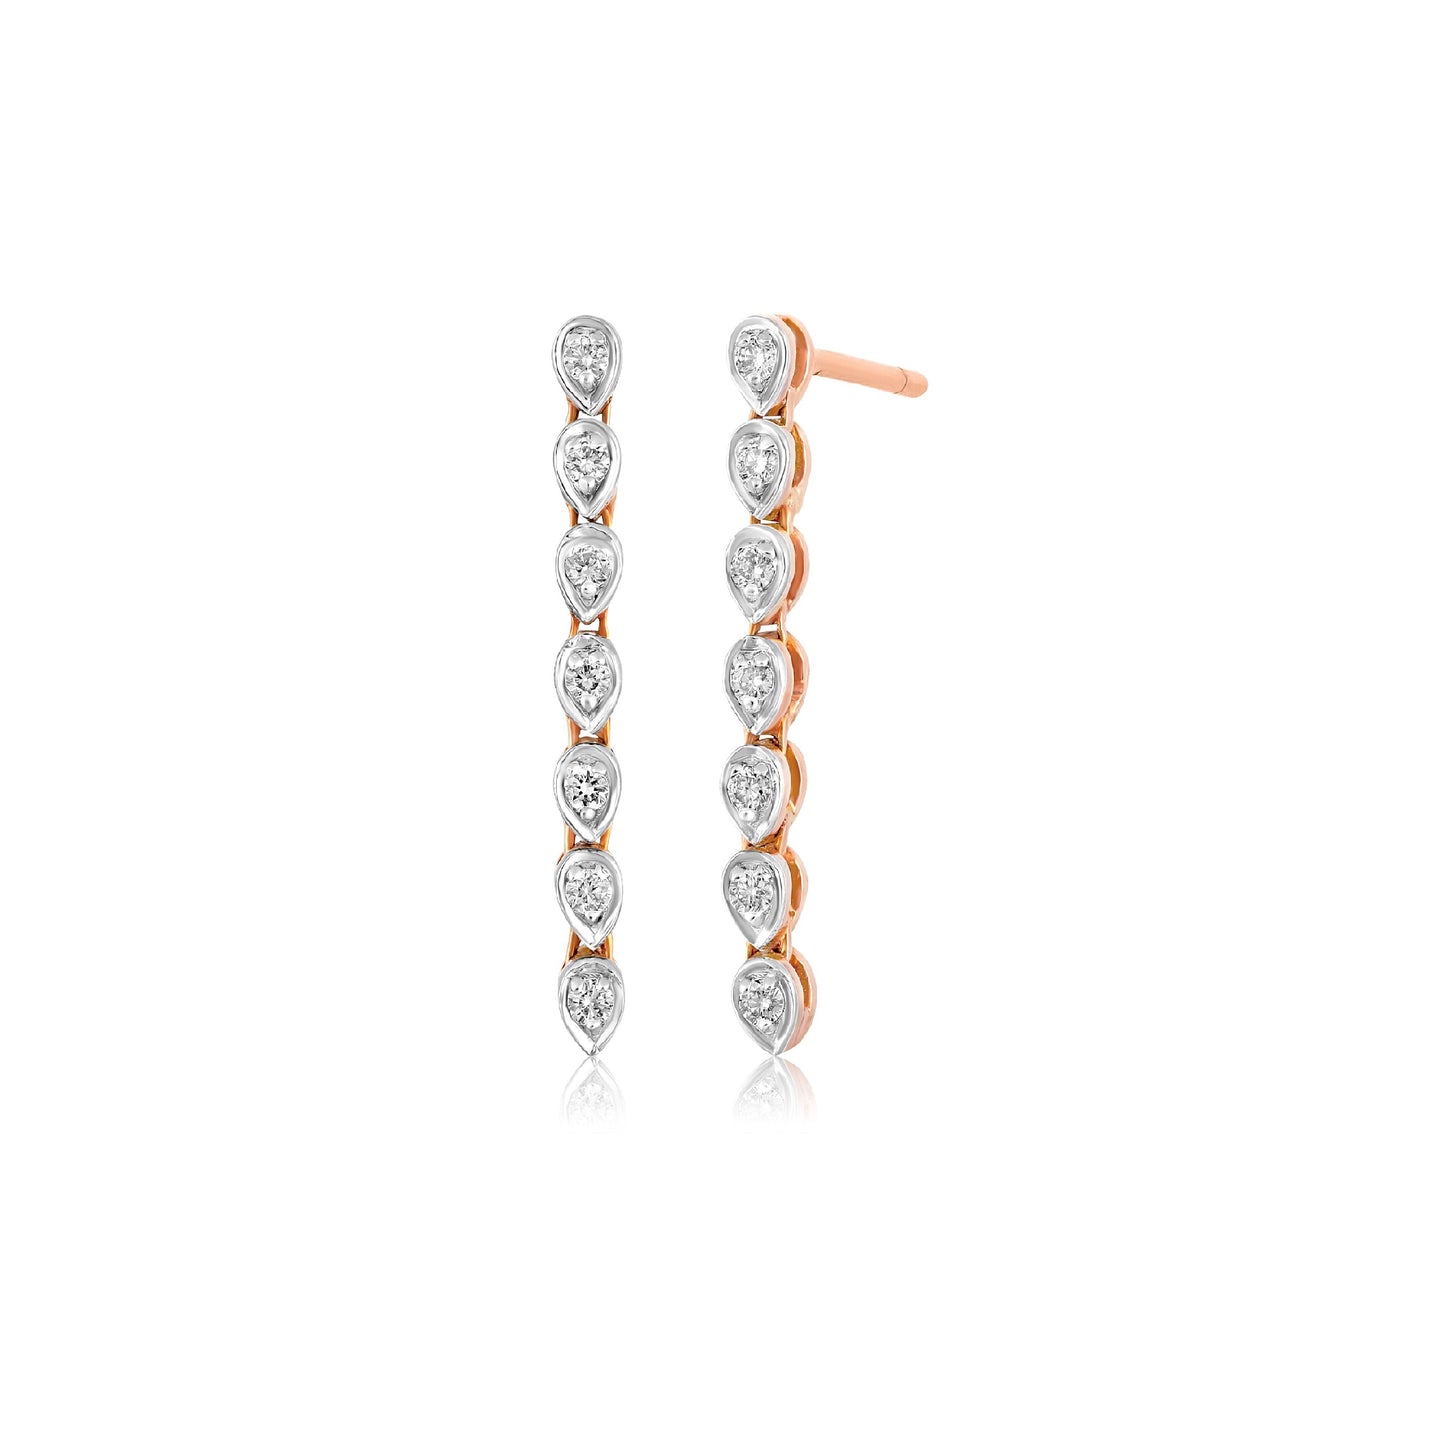 Minimalist Dangling Diamond Earrings